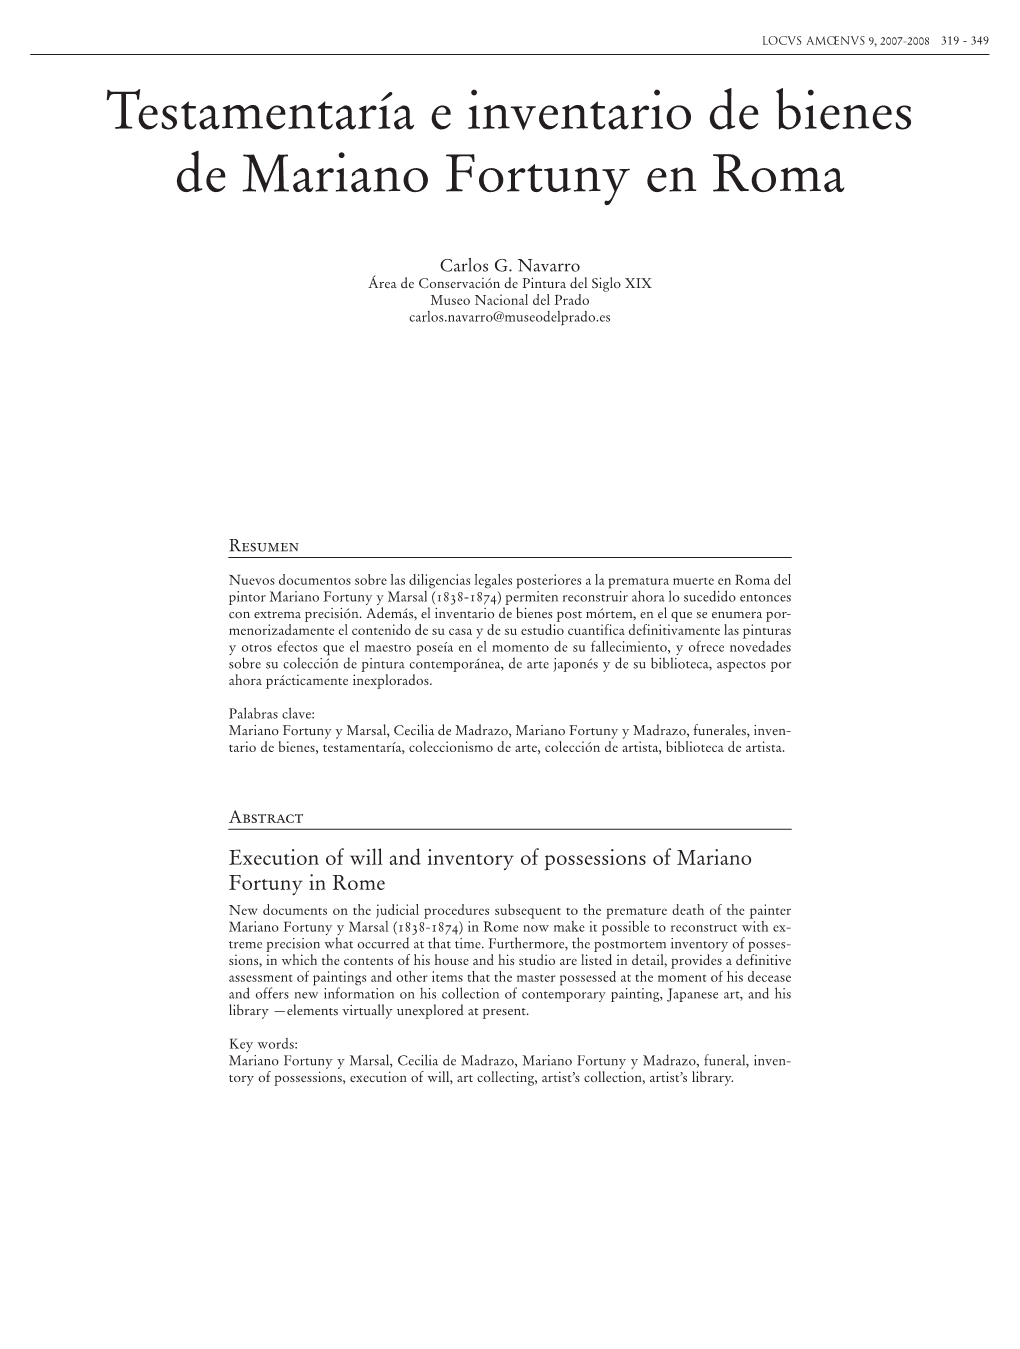 Testamentaría E Inventario De Bienes De Mariano Fortuny En Roma